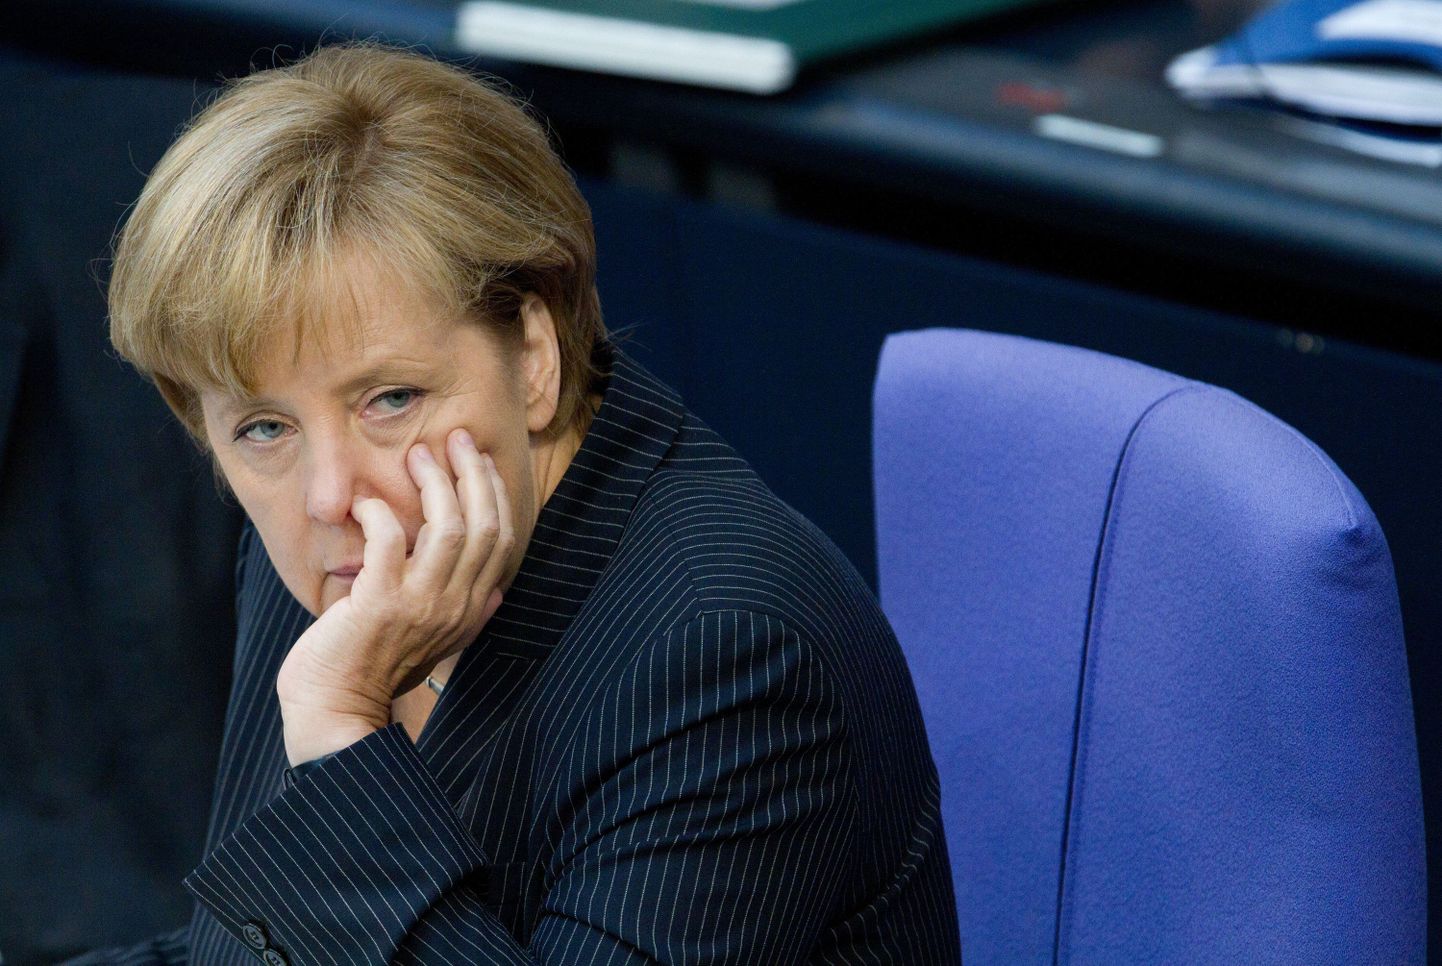 Konstitutsioonikohtu otsus vähendab Saksamaa kantsleri Angela Merkeli tegutsemisruumi, sest edaspidi peavad abiotsused saama parlamendi eelarvekomitee heakskiidu.